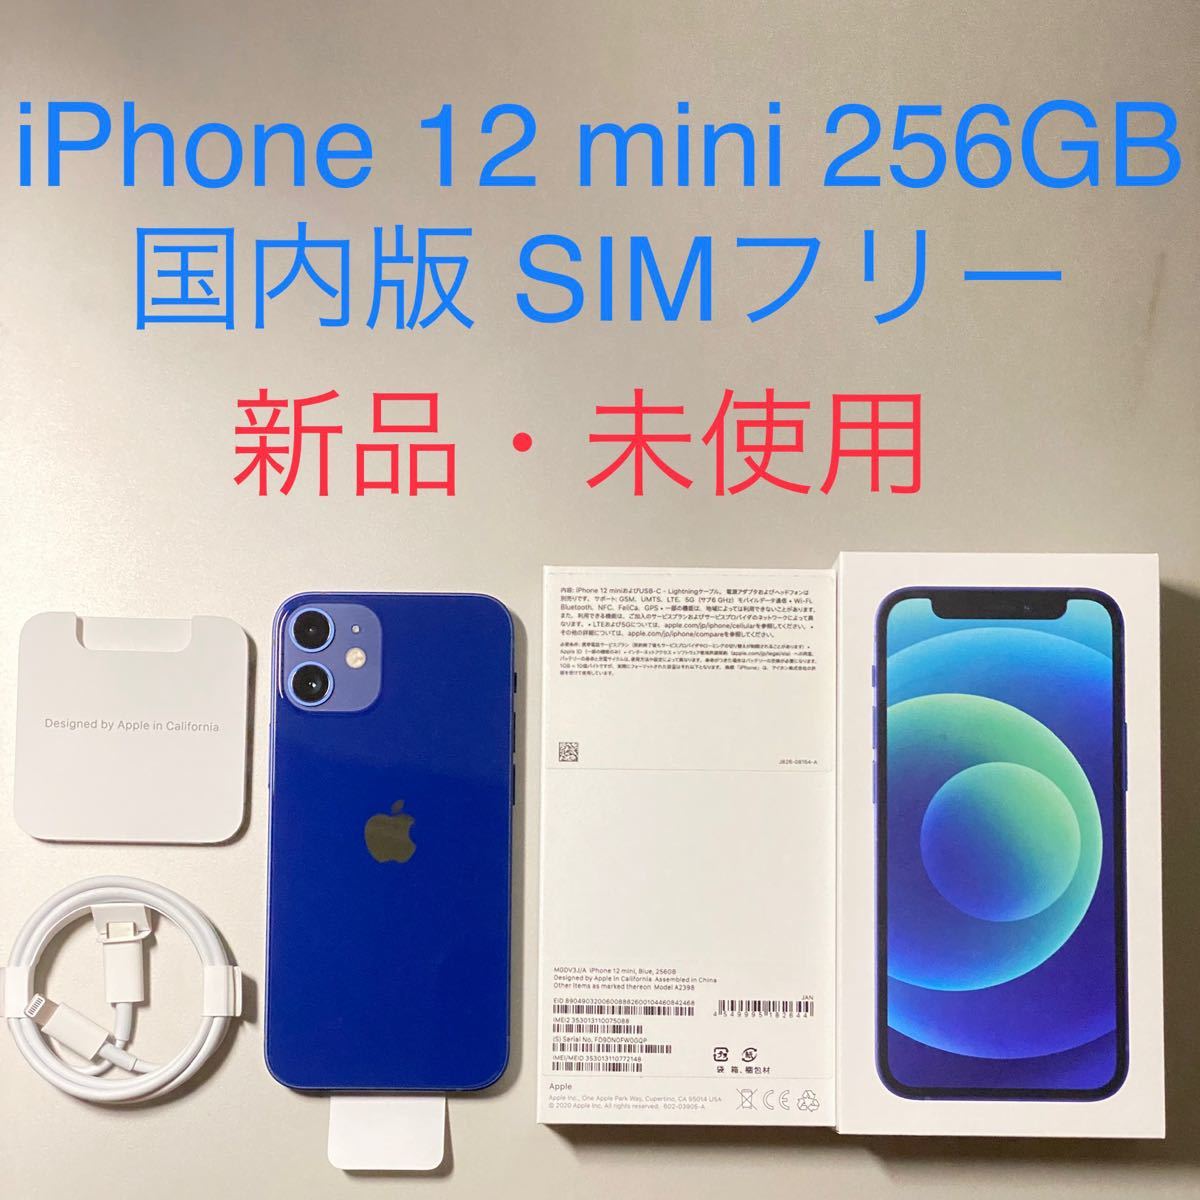 iPhone 12 mini 256GB Apple版 SIMフリー 新品 未使用 ブルー Blue